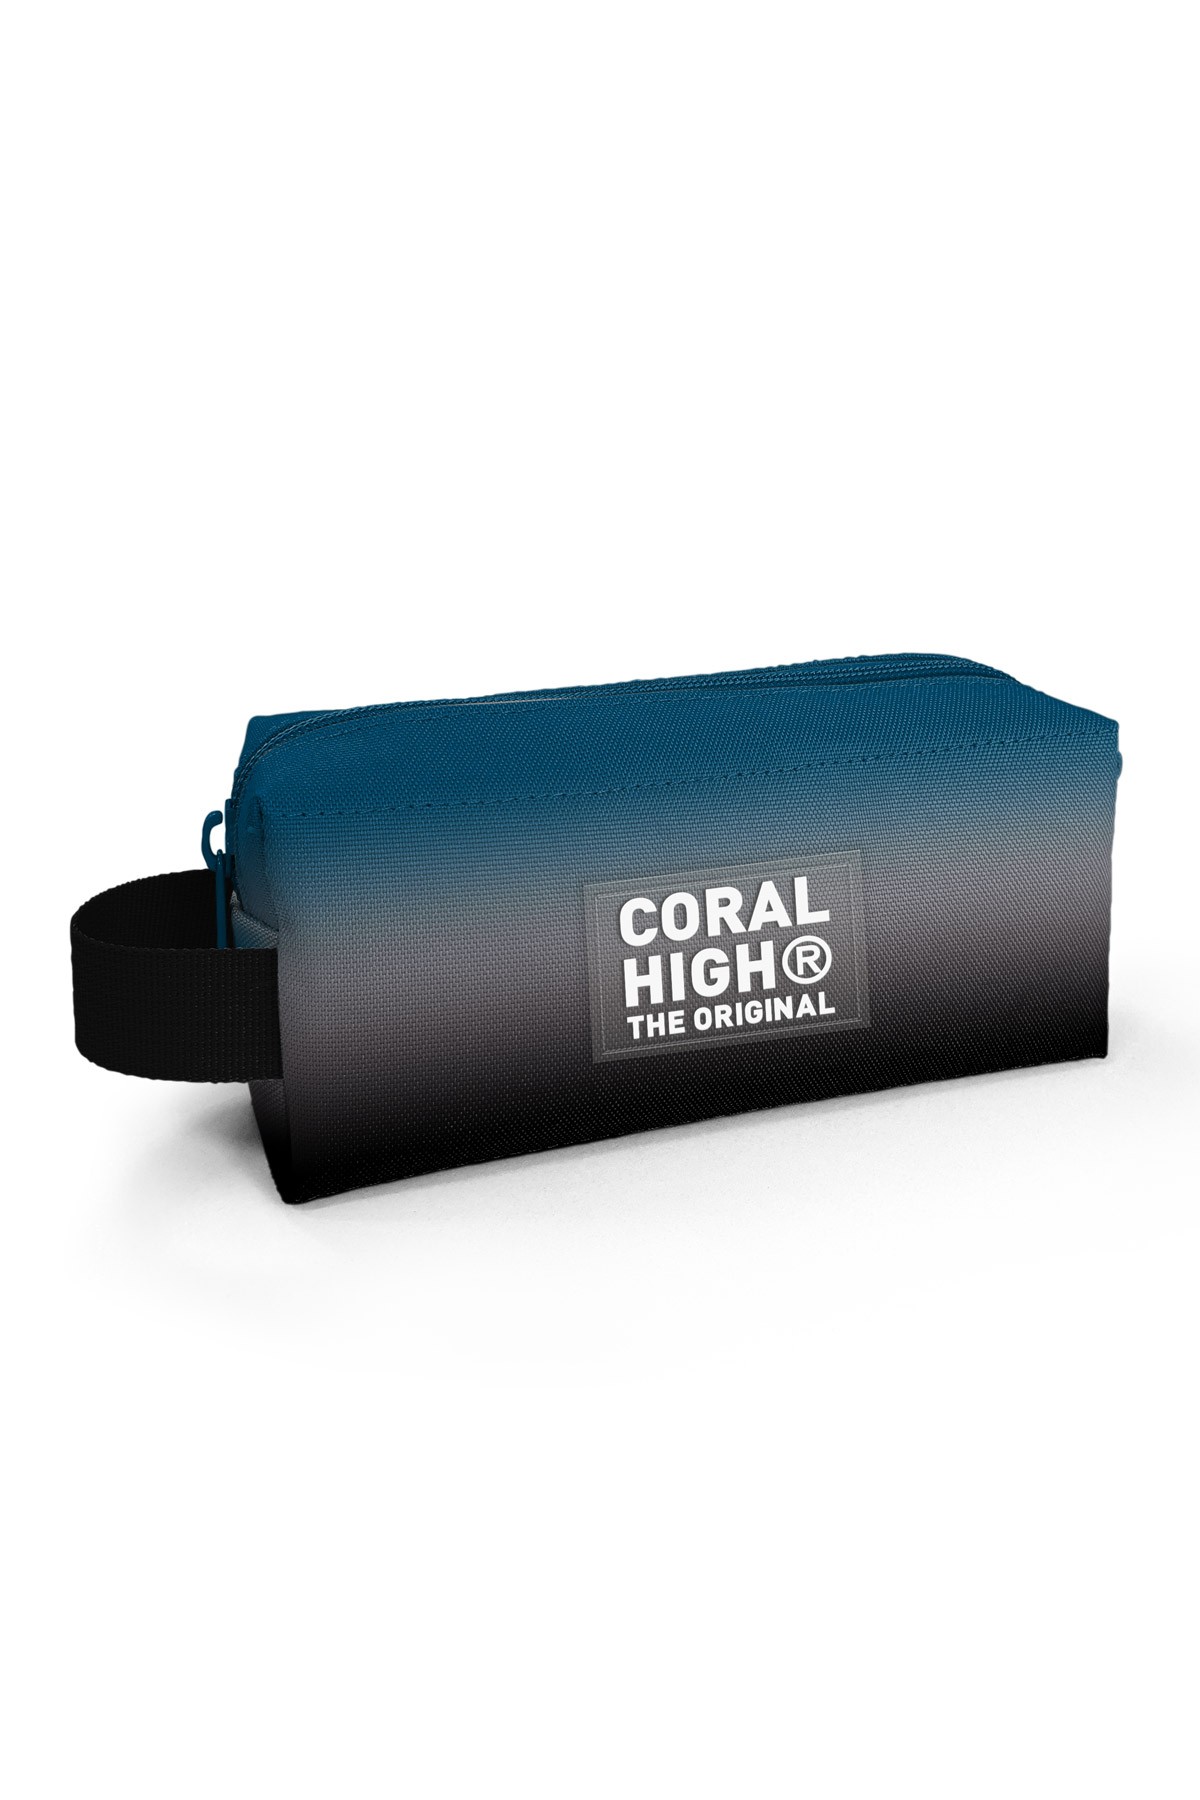 Coral High Kids Nefti Gri Renk Geçişli Kalem Çantası 22082